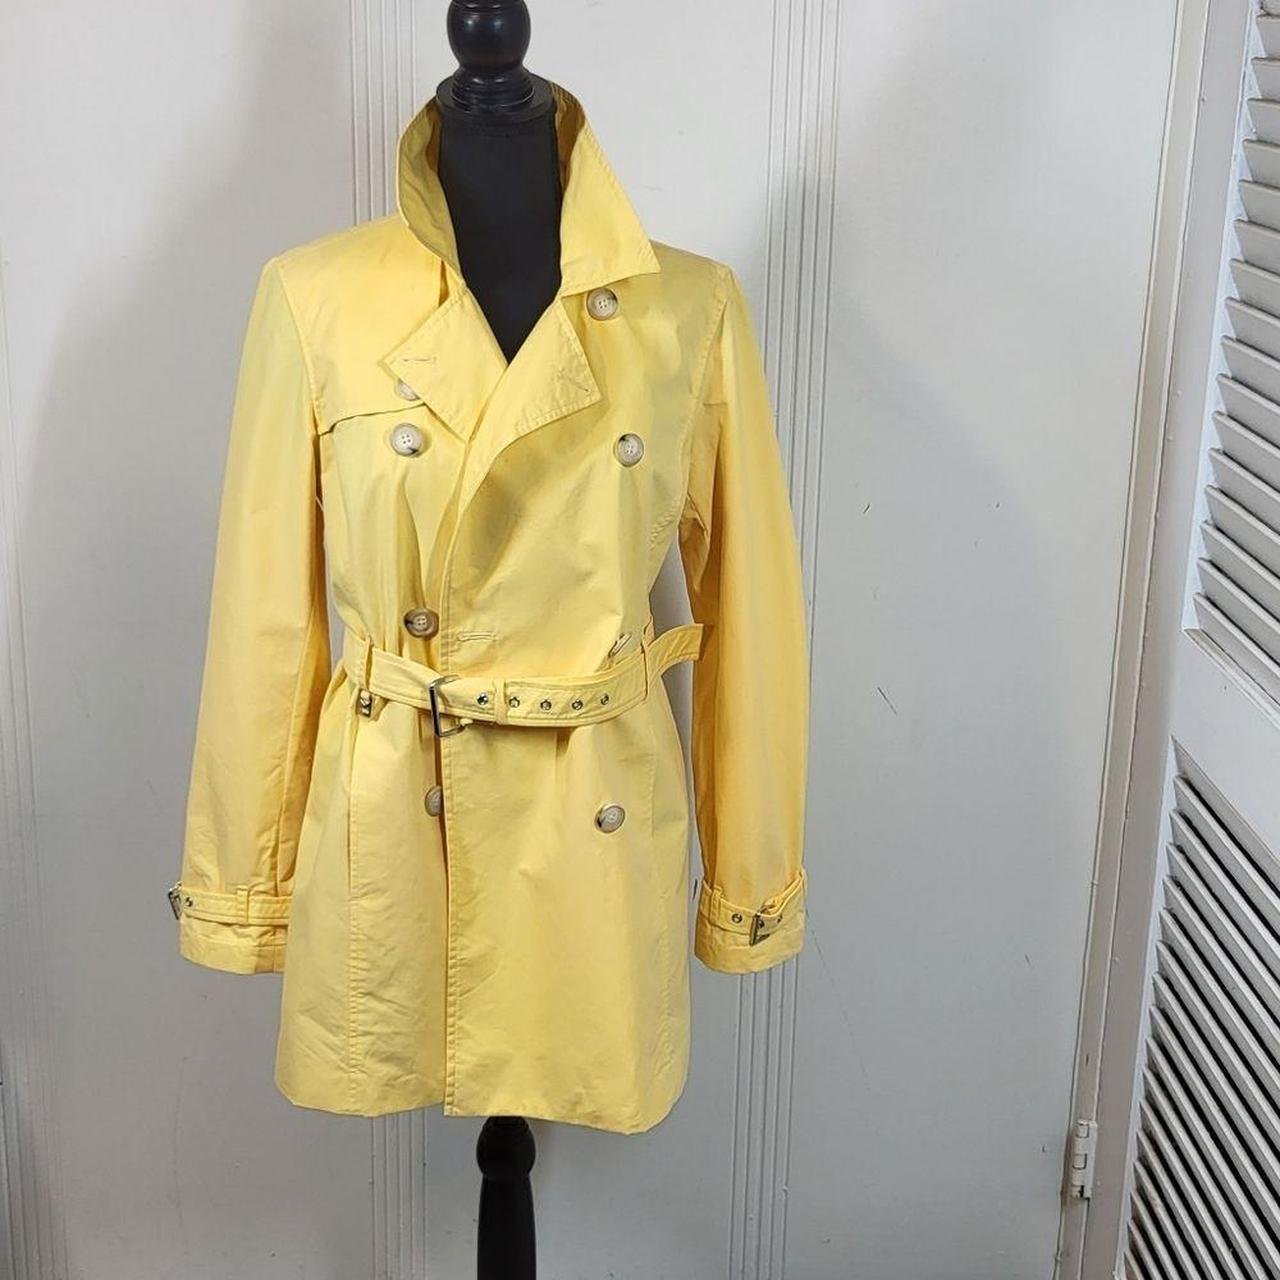 Michael Kors Women's Yellow Jacket | Depop